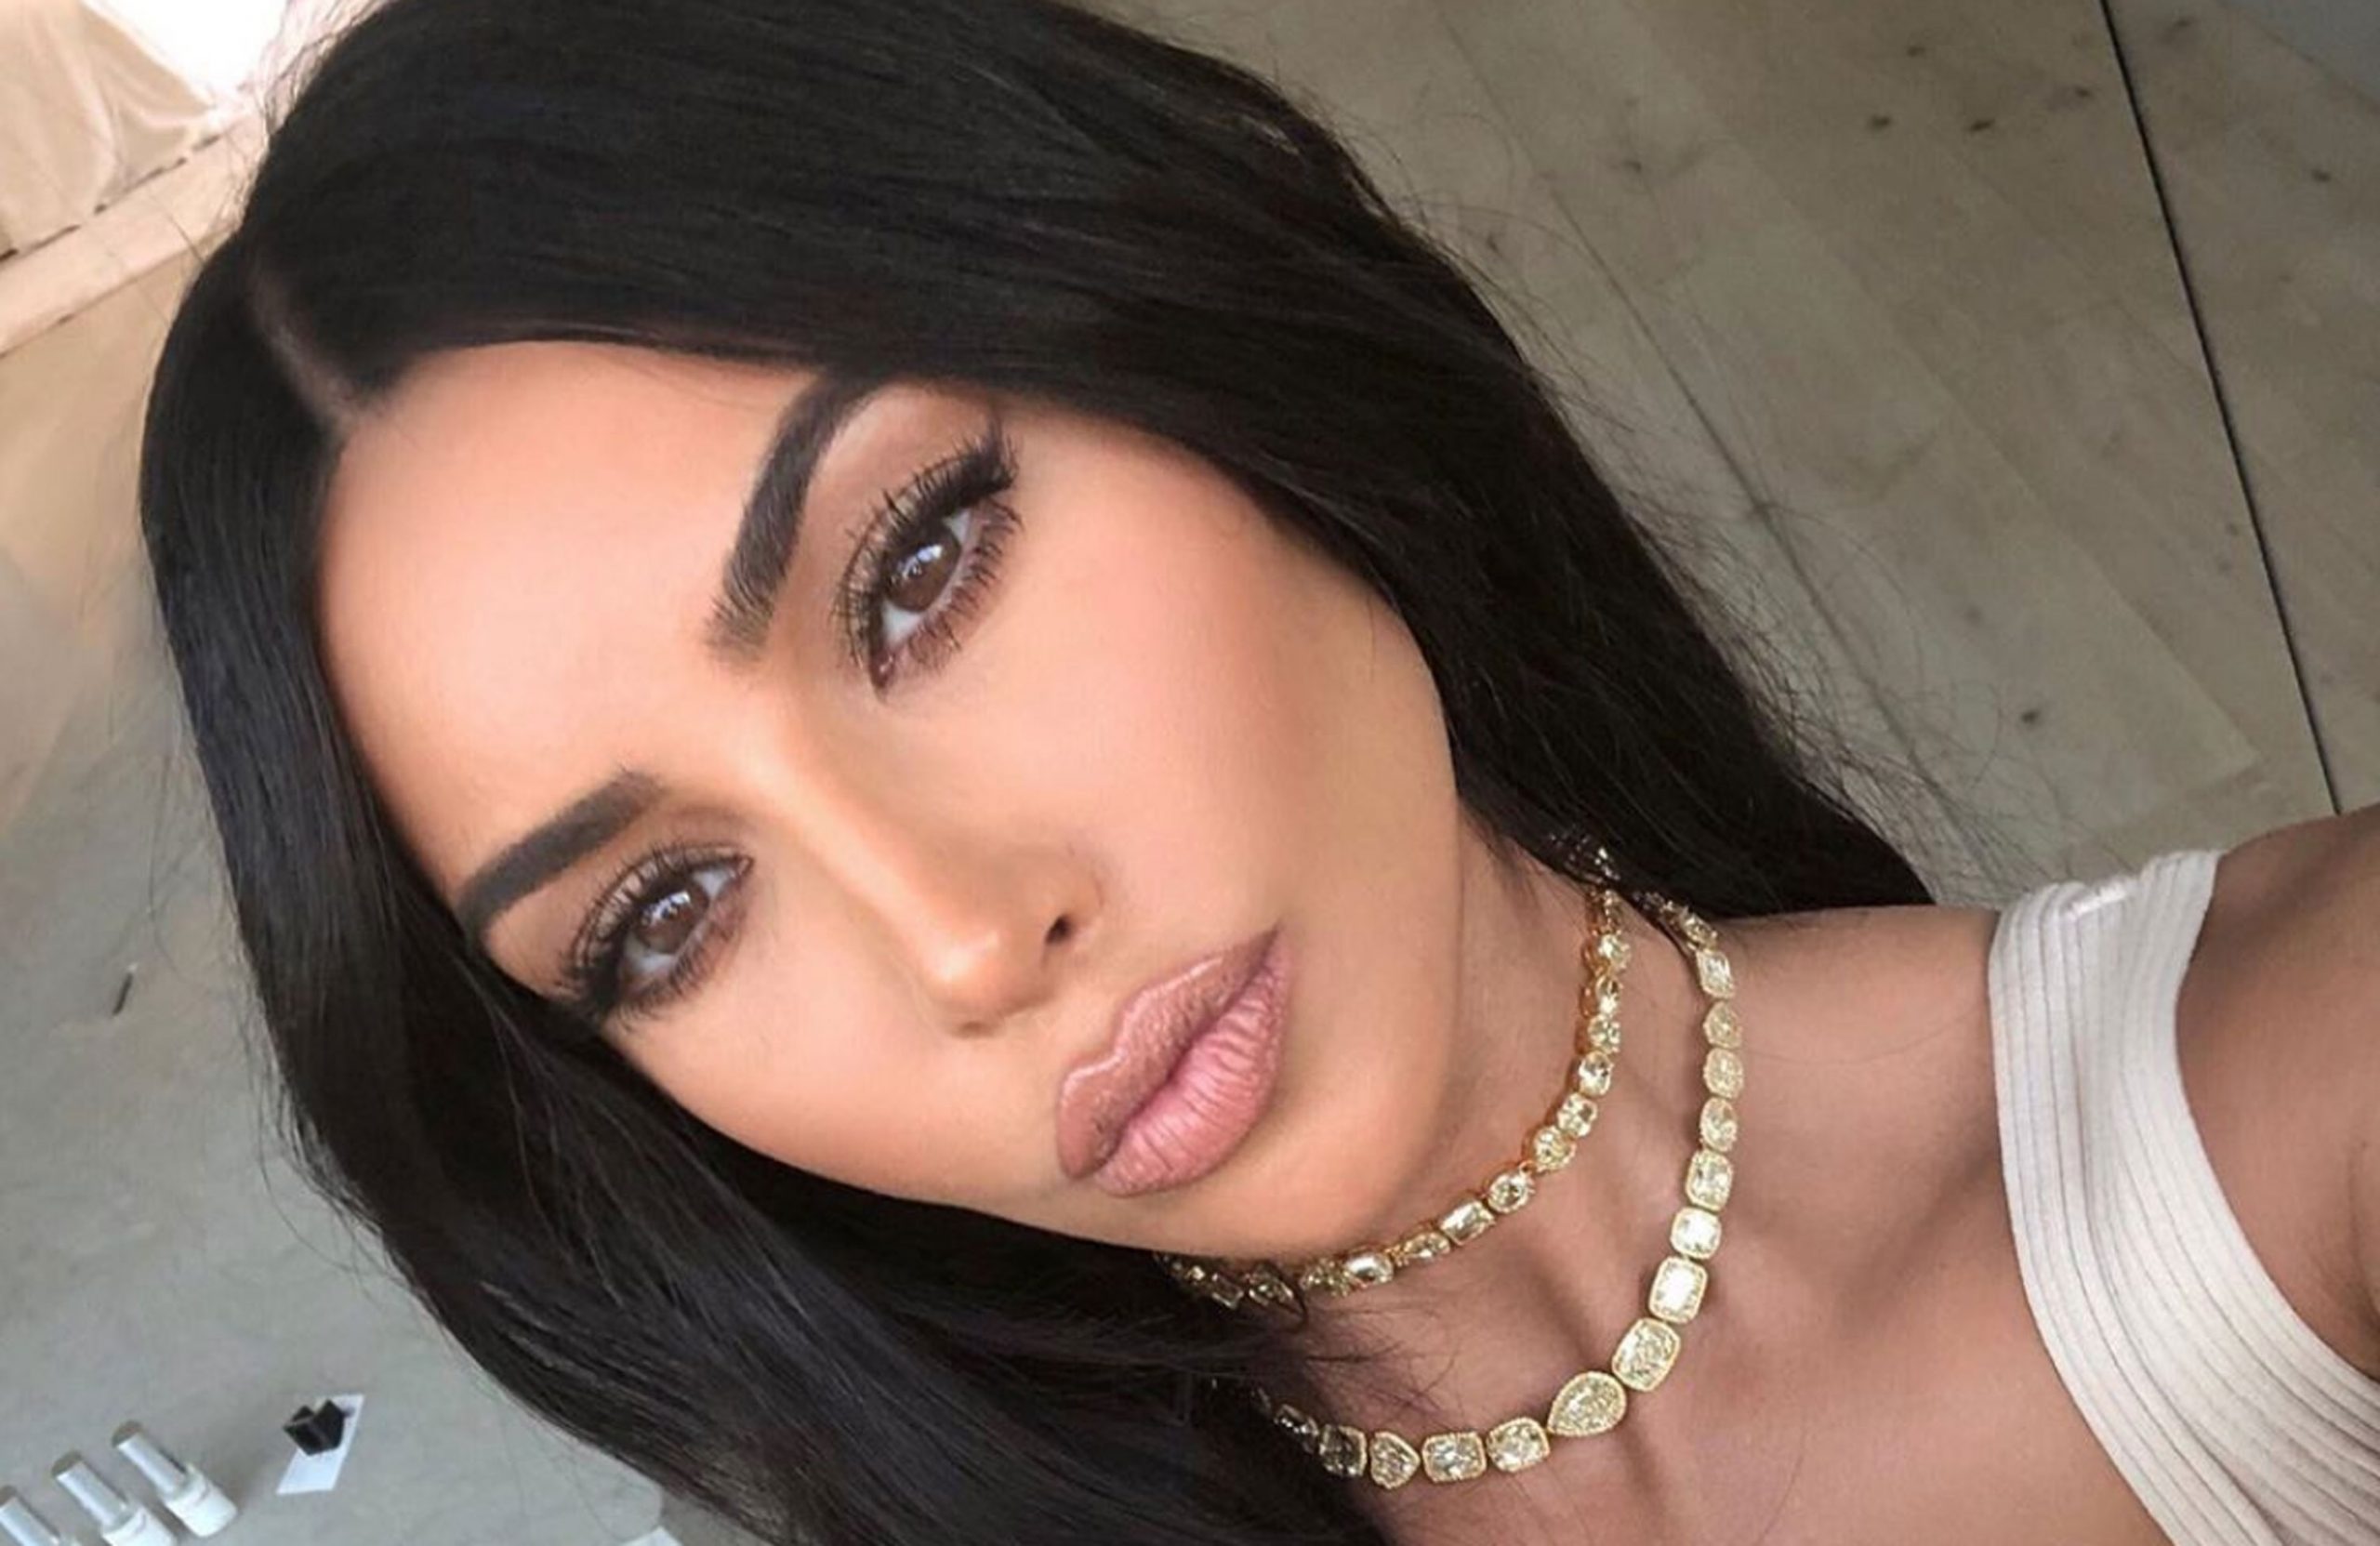 Nova música de Drake gera rumores sobre possível romance com Kim Kardashian